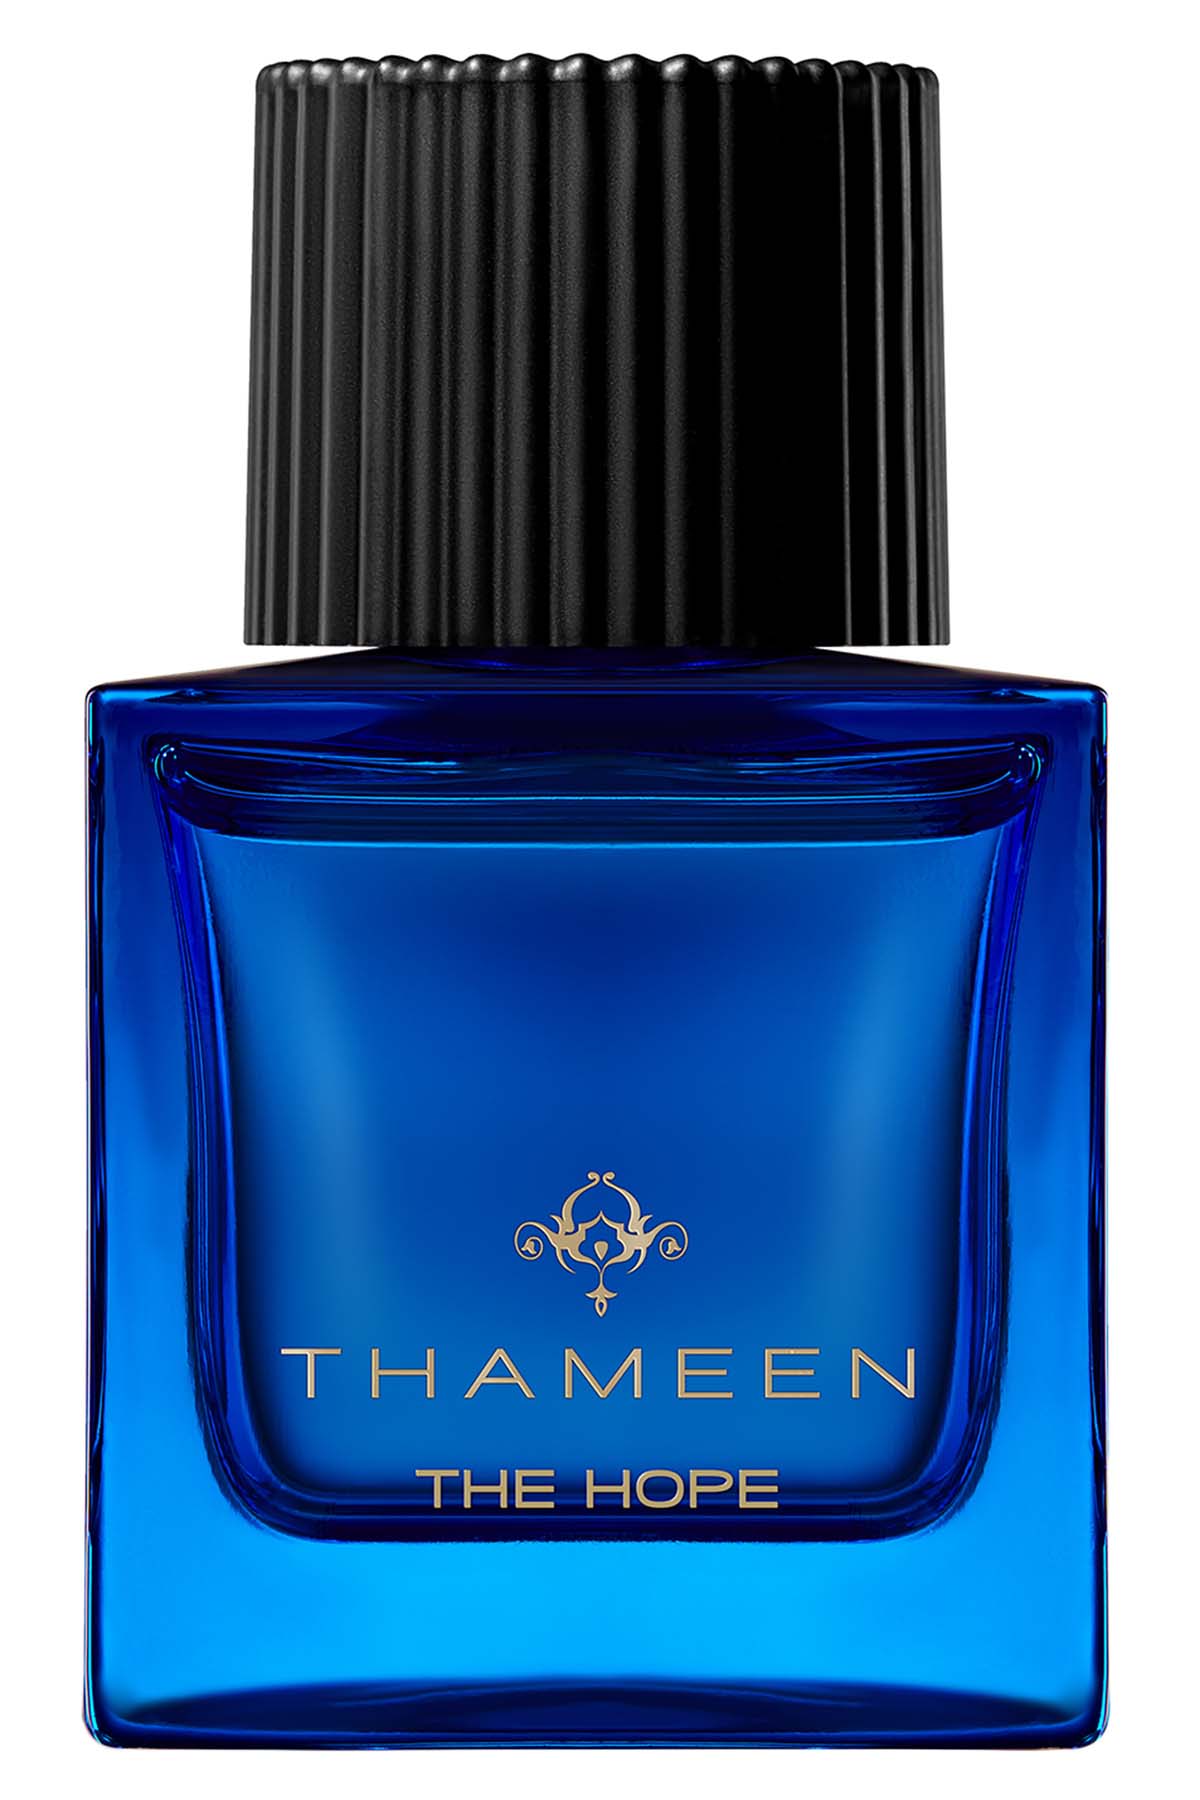 Thameen The Hope Extrait de Parfum